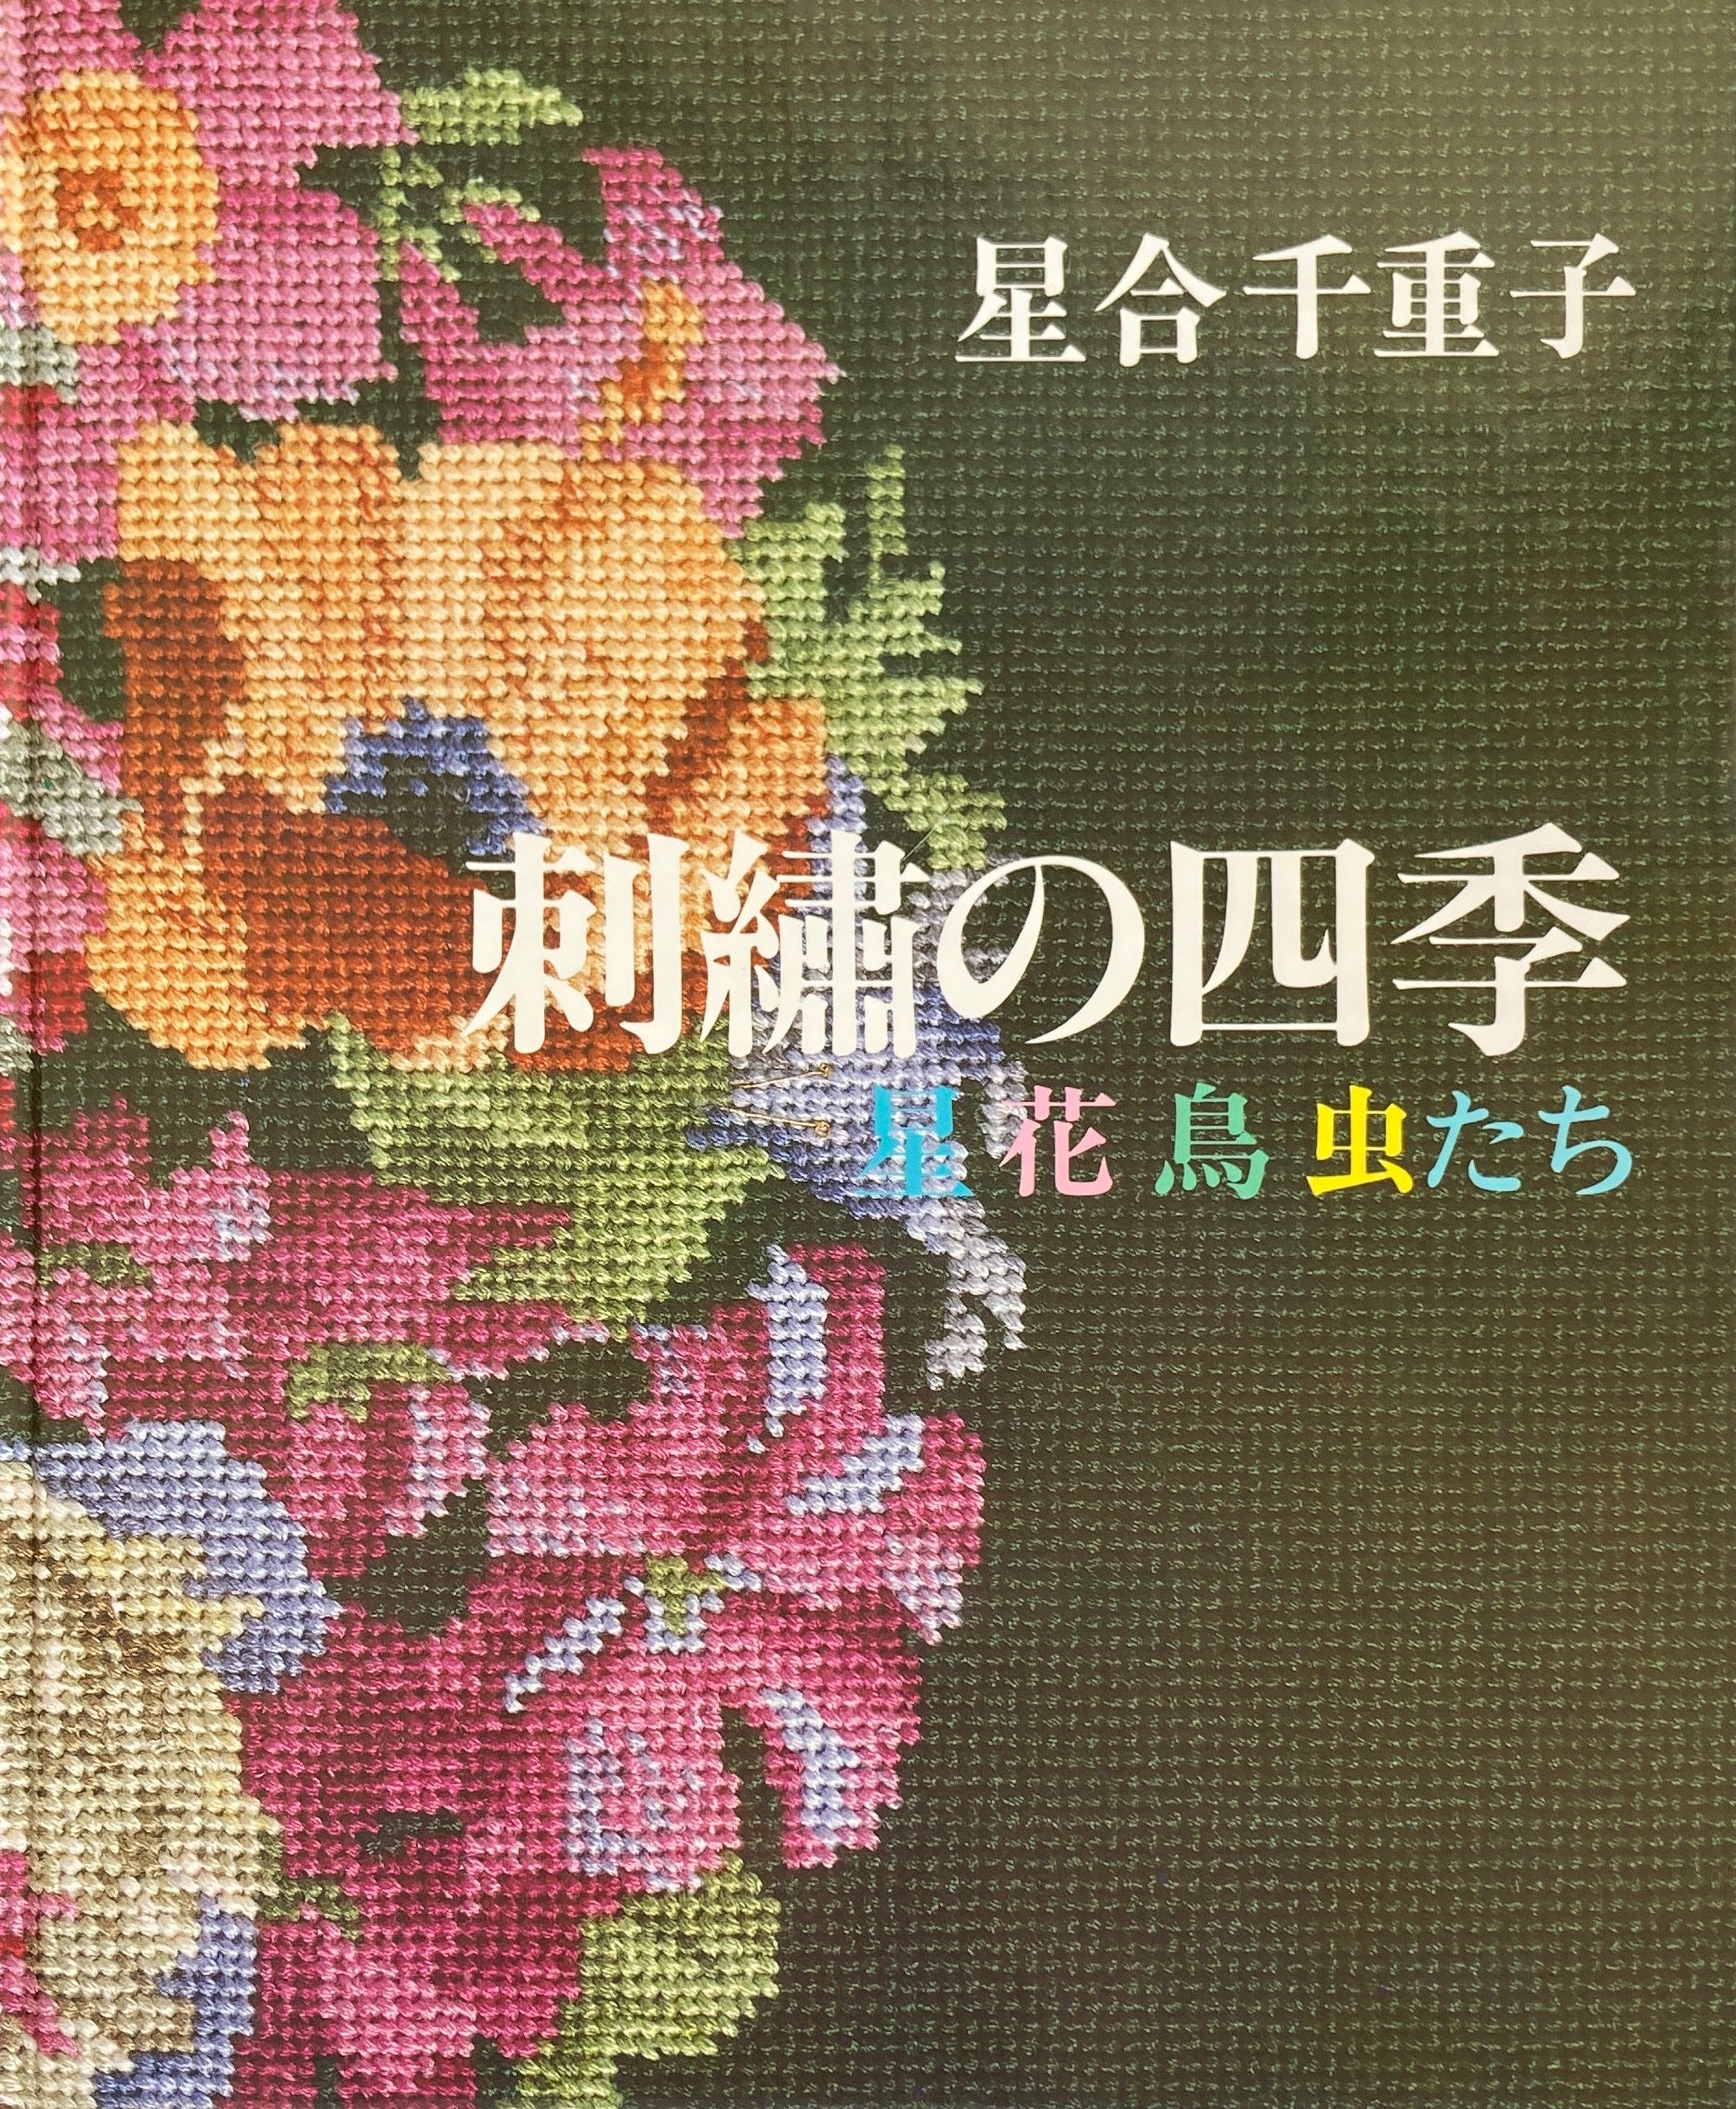 刺繍の四季 星花鳥虫たち 星合千重子 – smokebooks shop